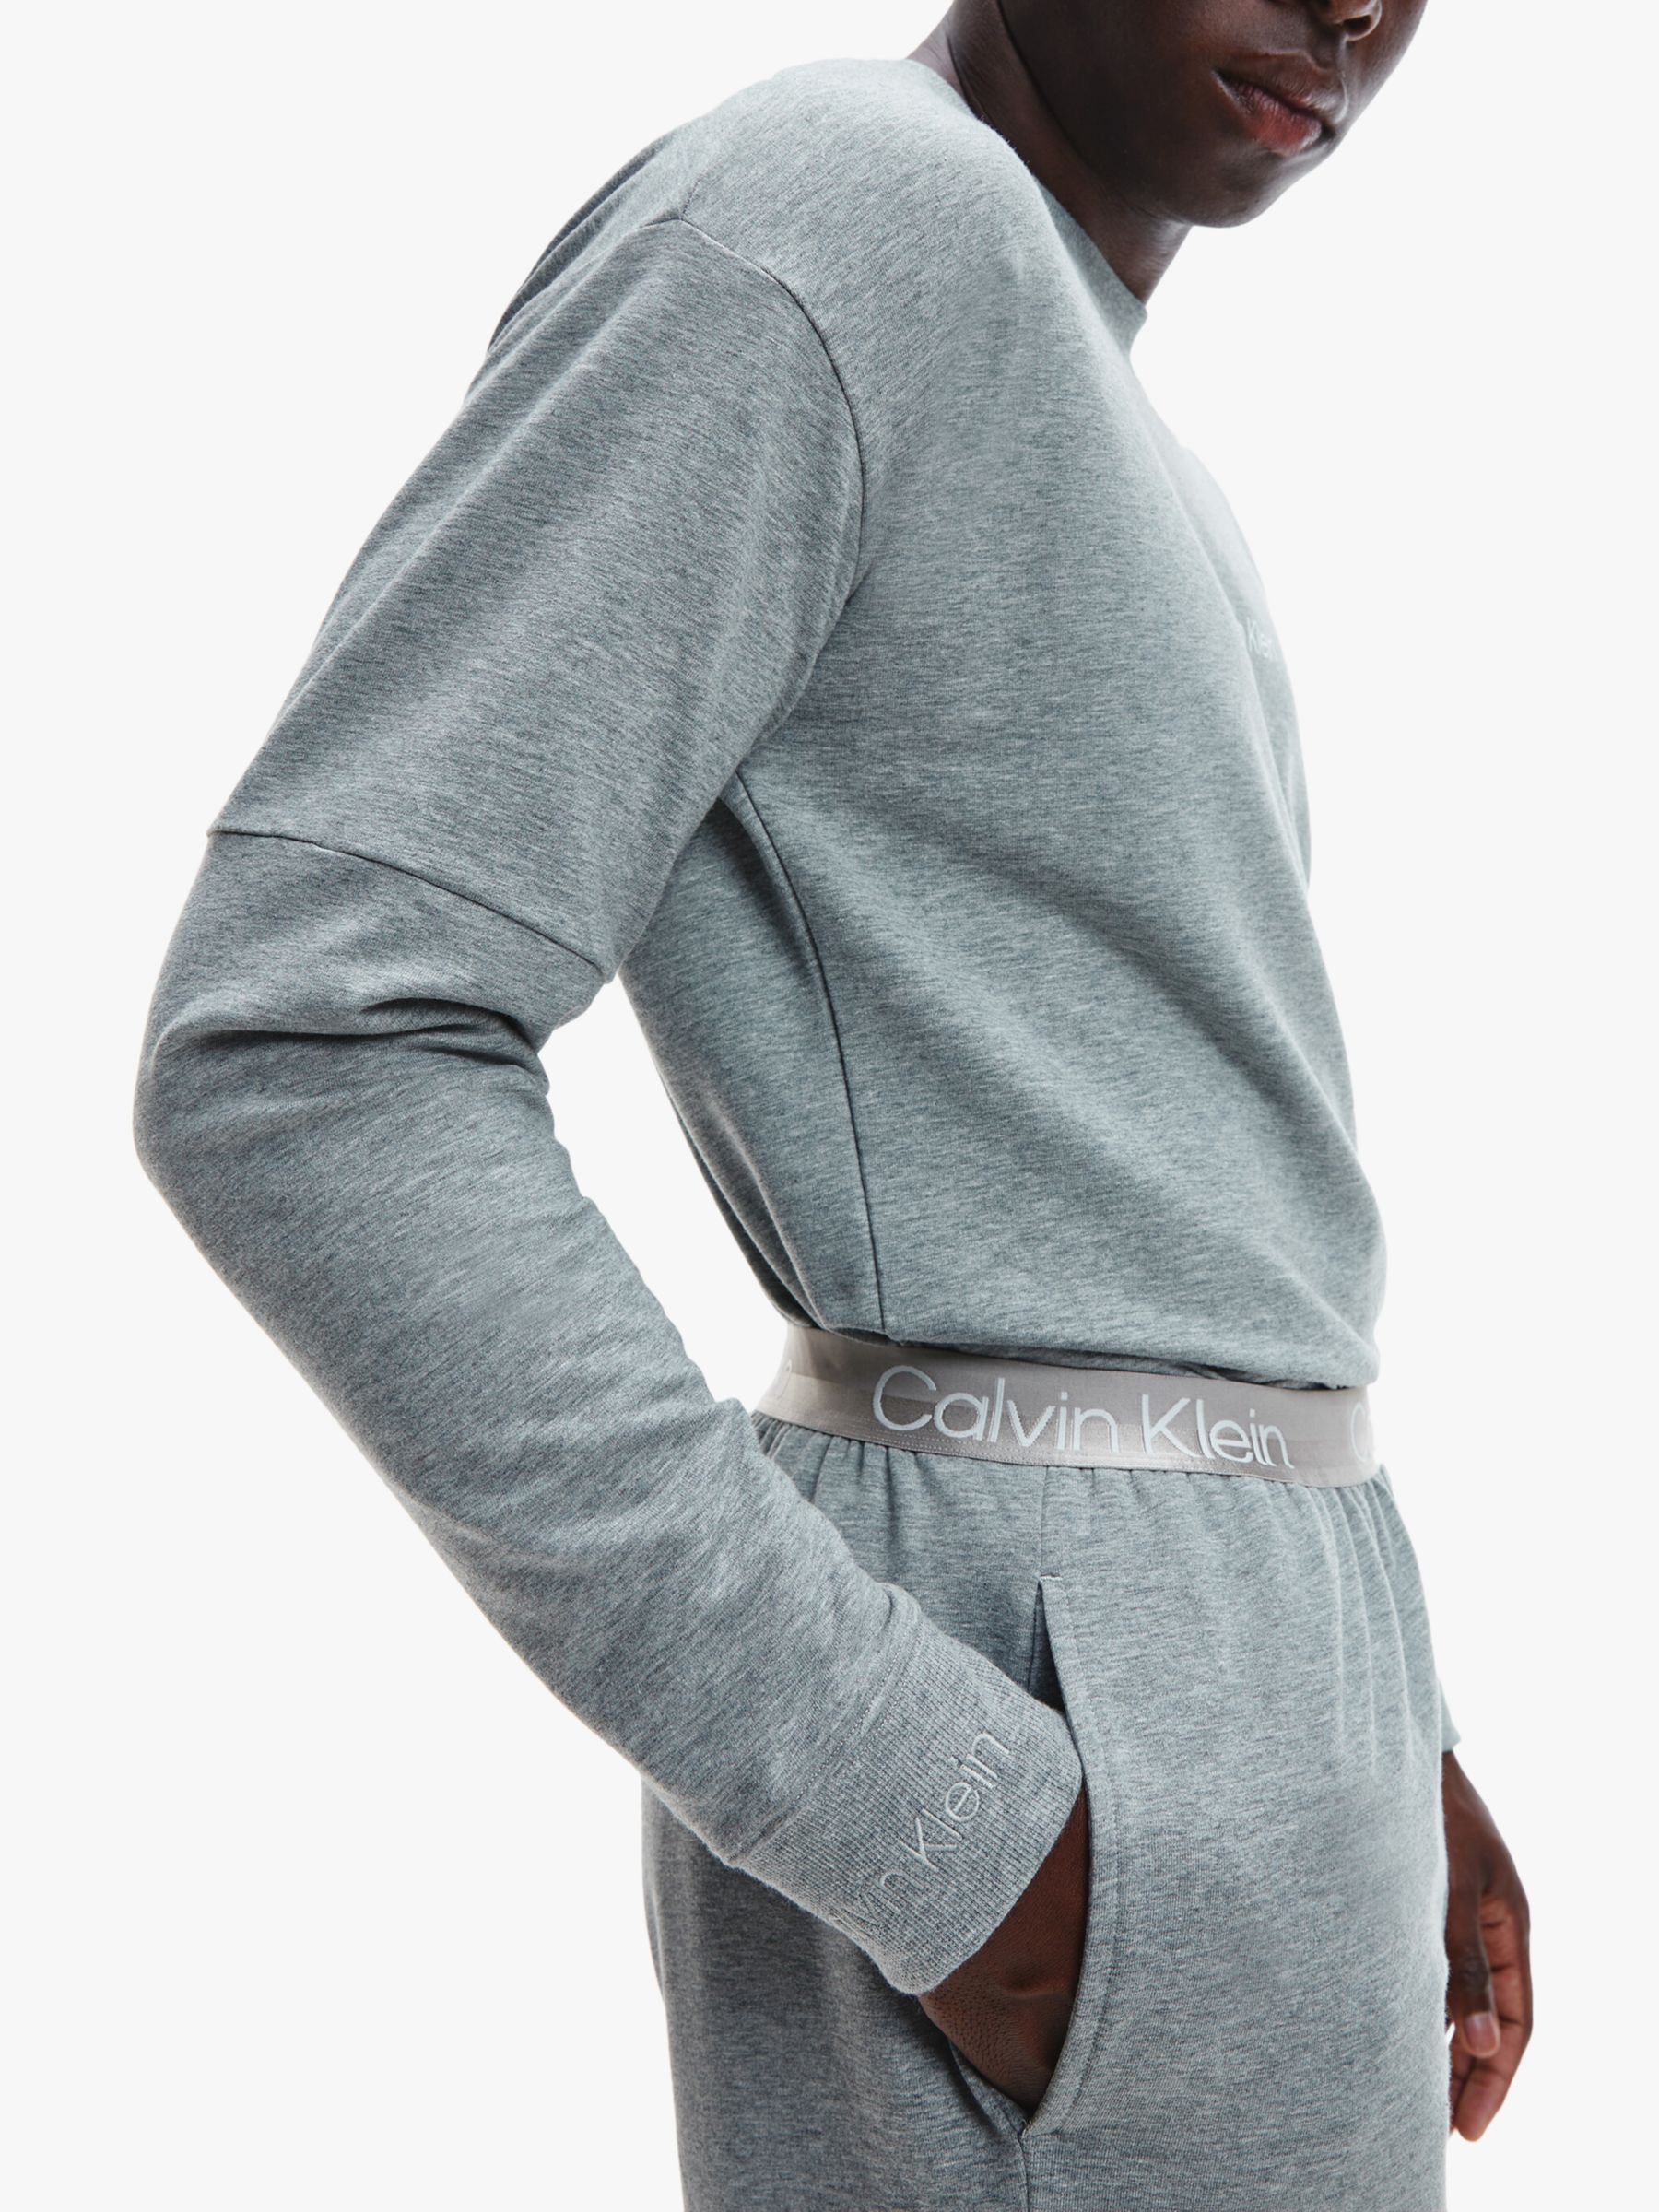 Calvin Klein Modern Structure Sweatshirt, S Grey Heather, Lounge